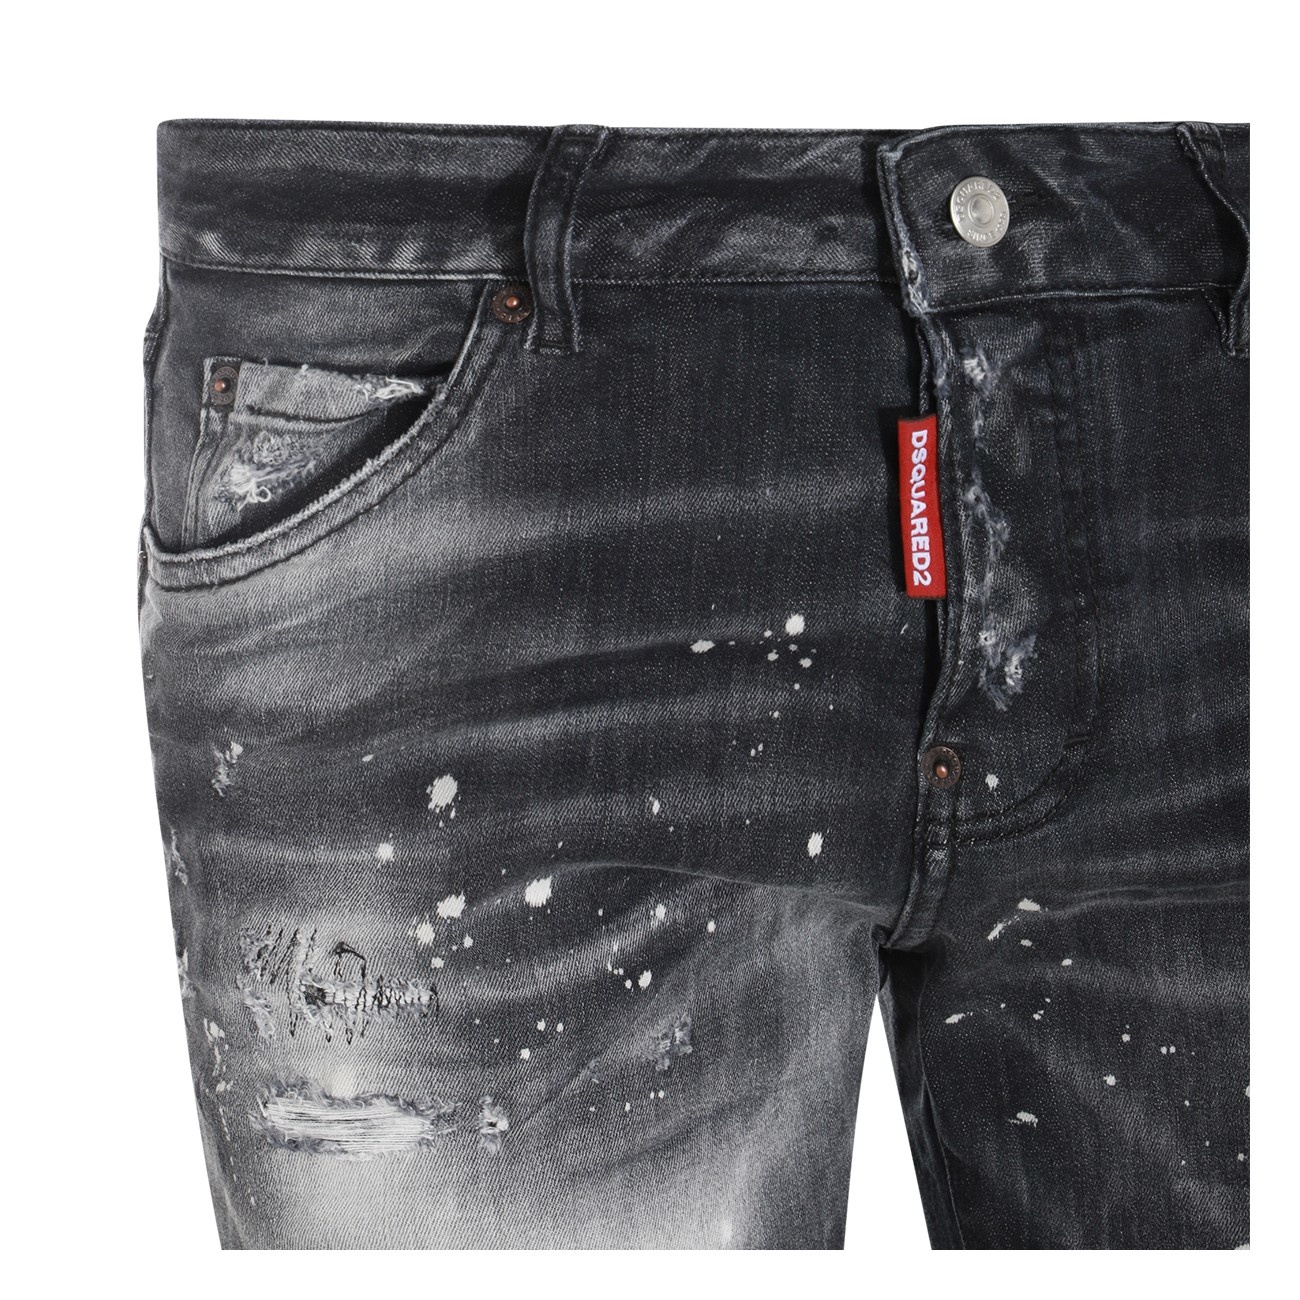 black cotton denim jeans - 3